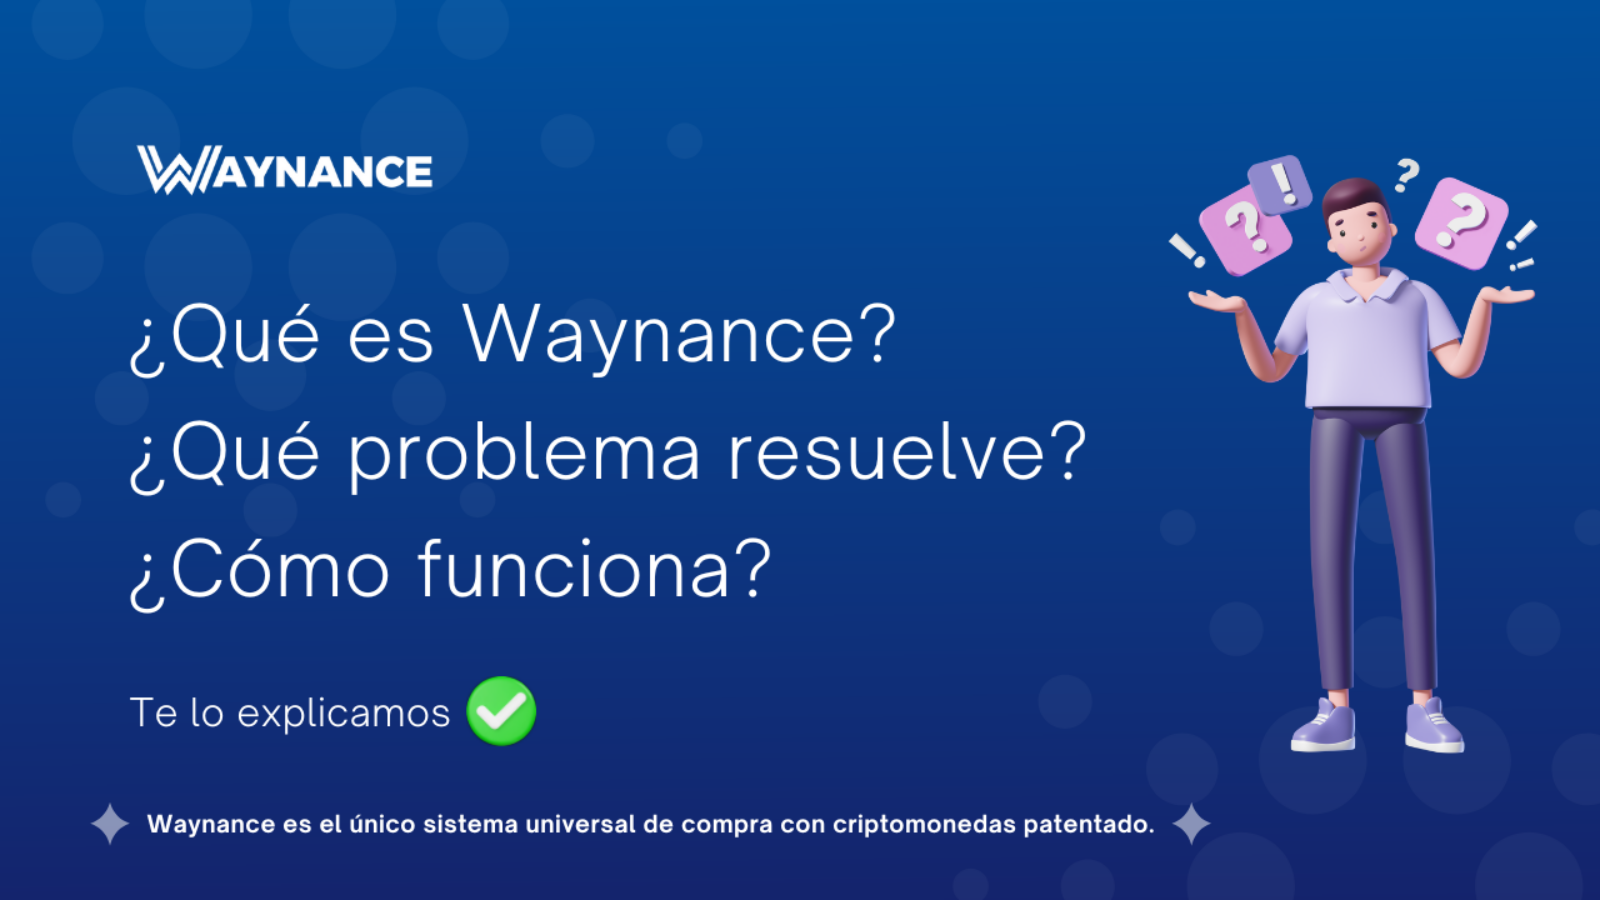 ¿Qué es Waynance y como funciona?